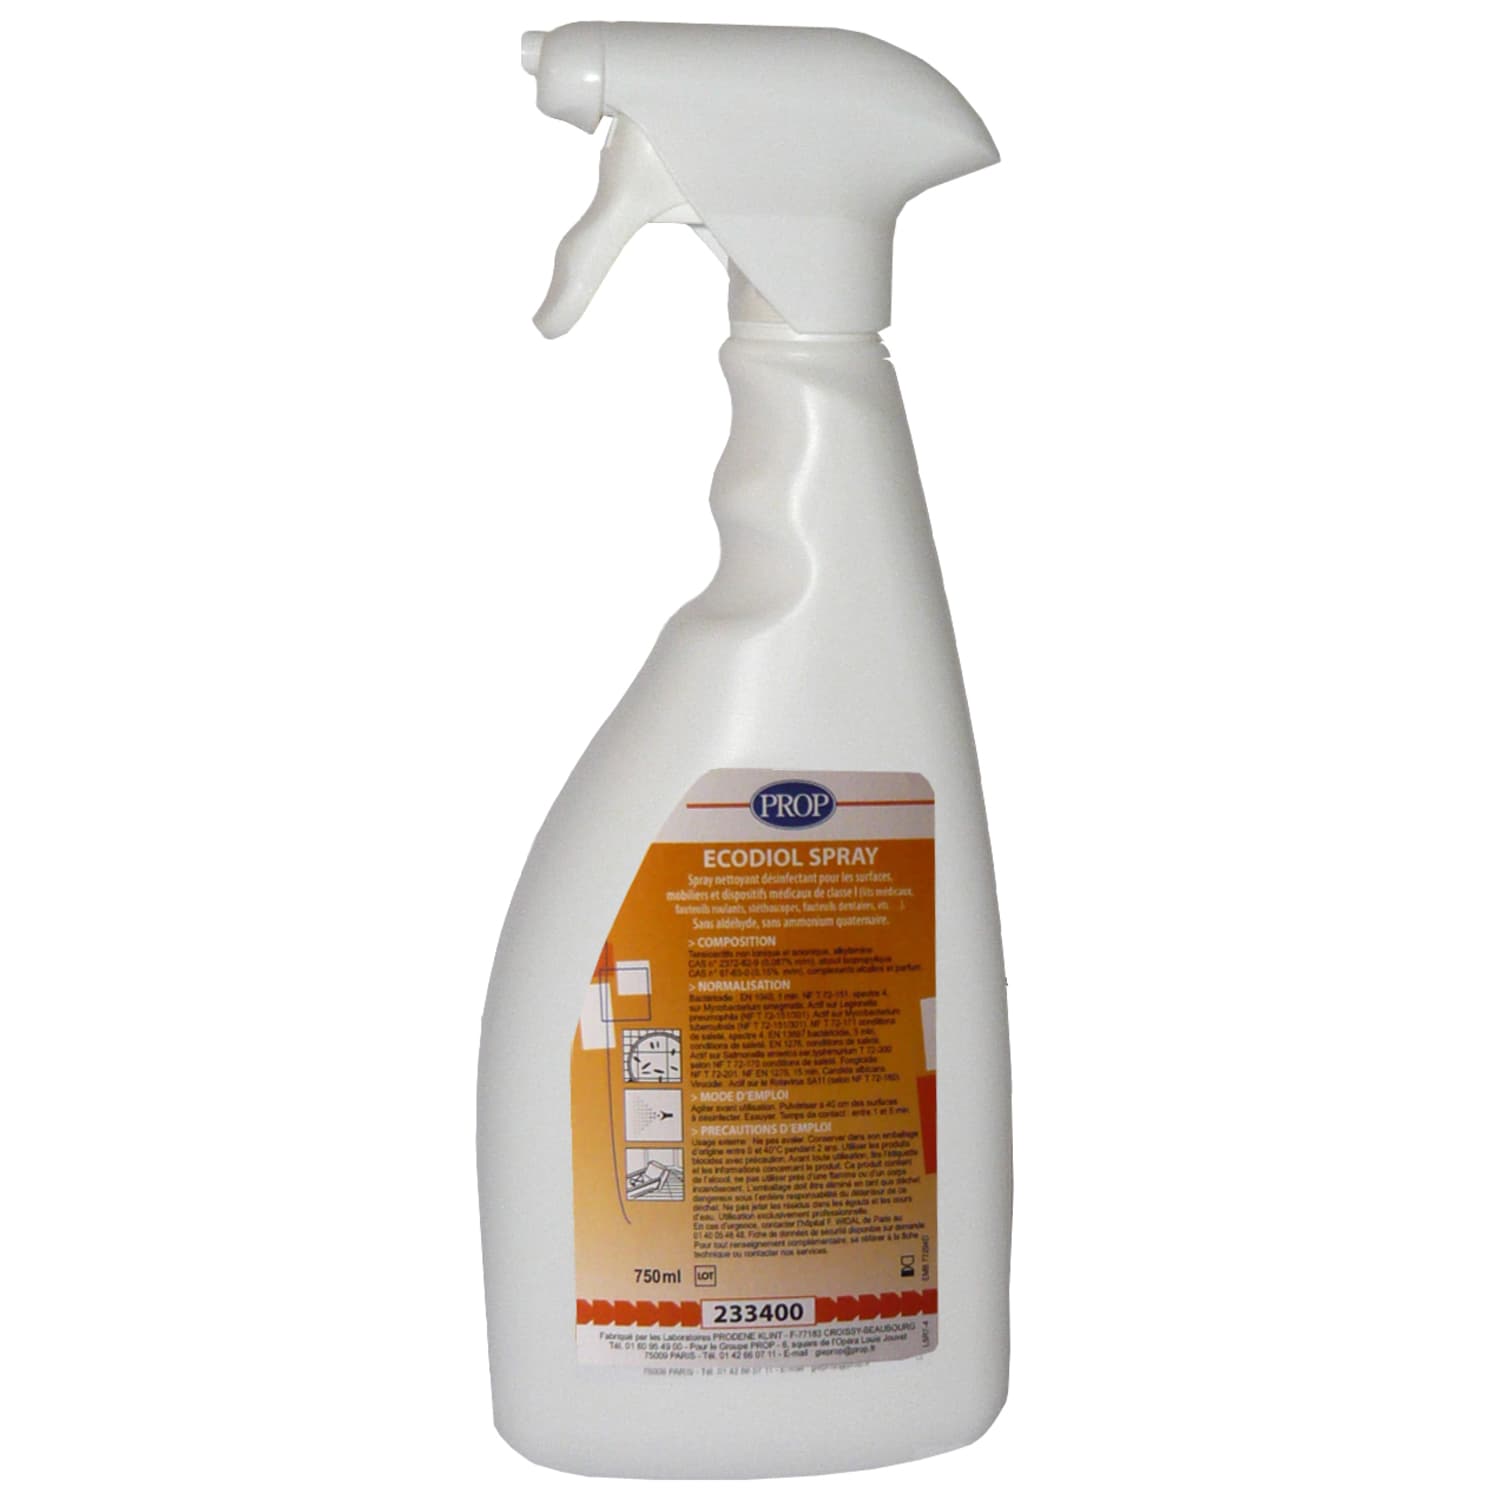 PROP Ecodiol spray détergent désinfectant pulvérisateur de 750ml photo du produit